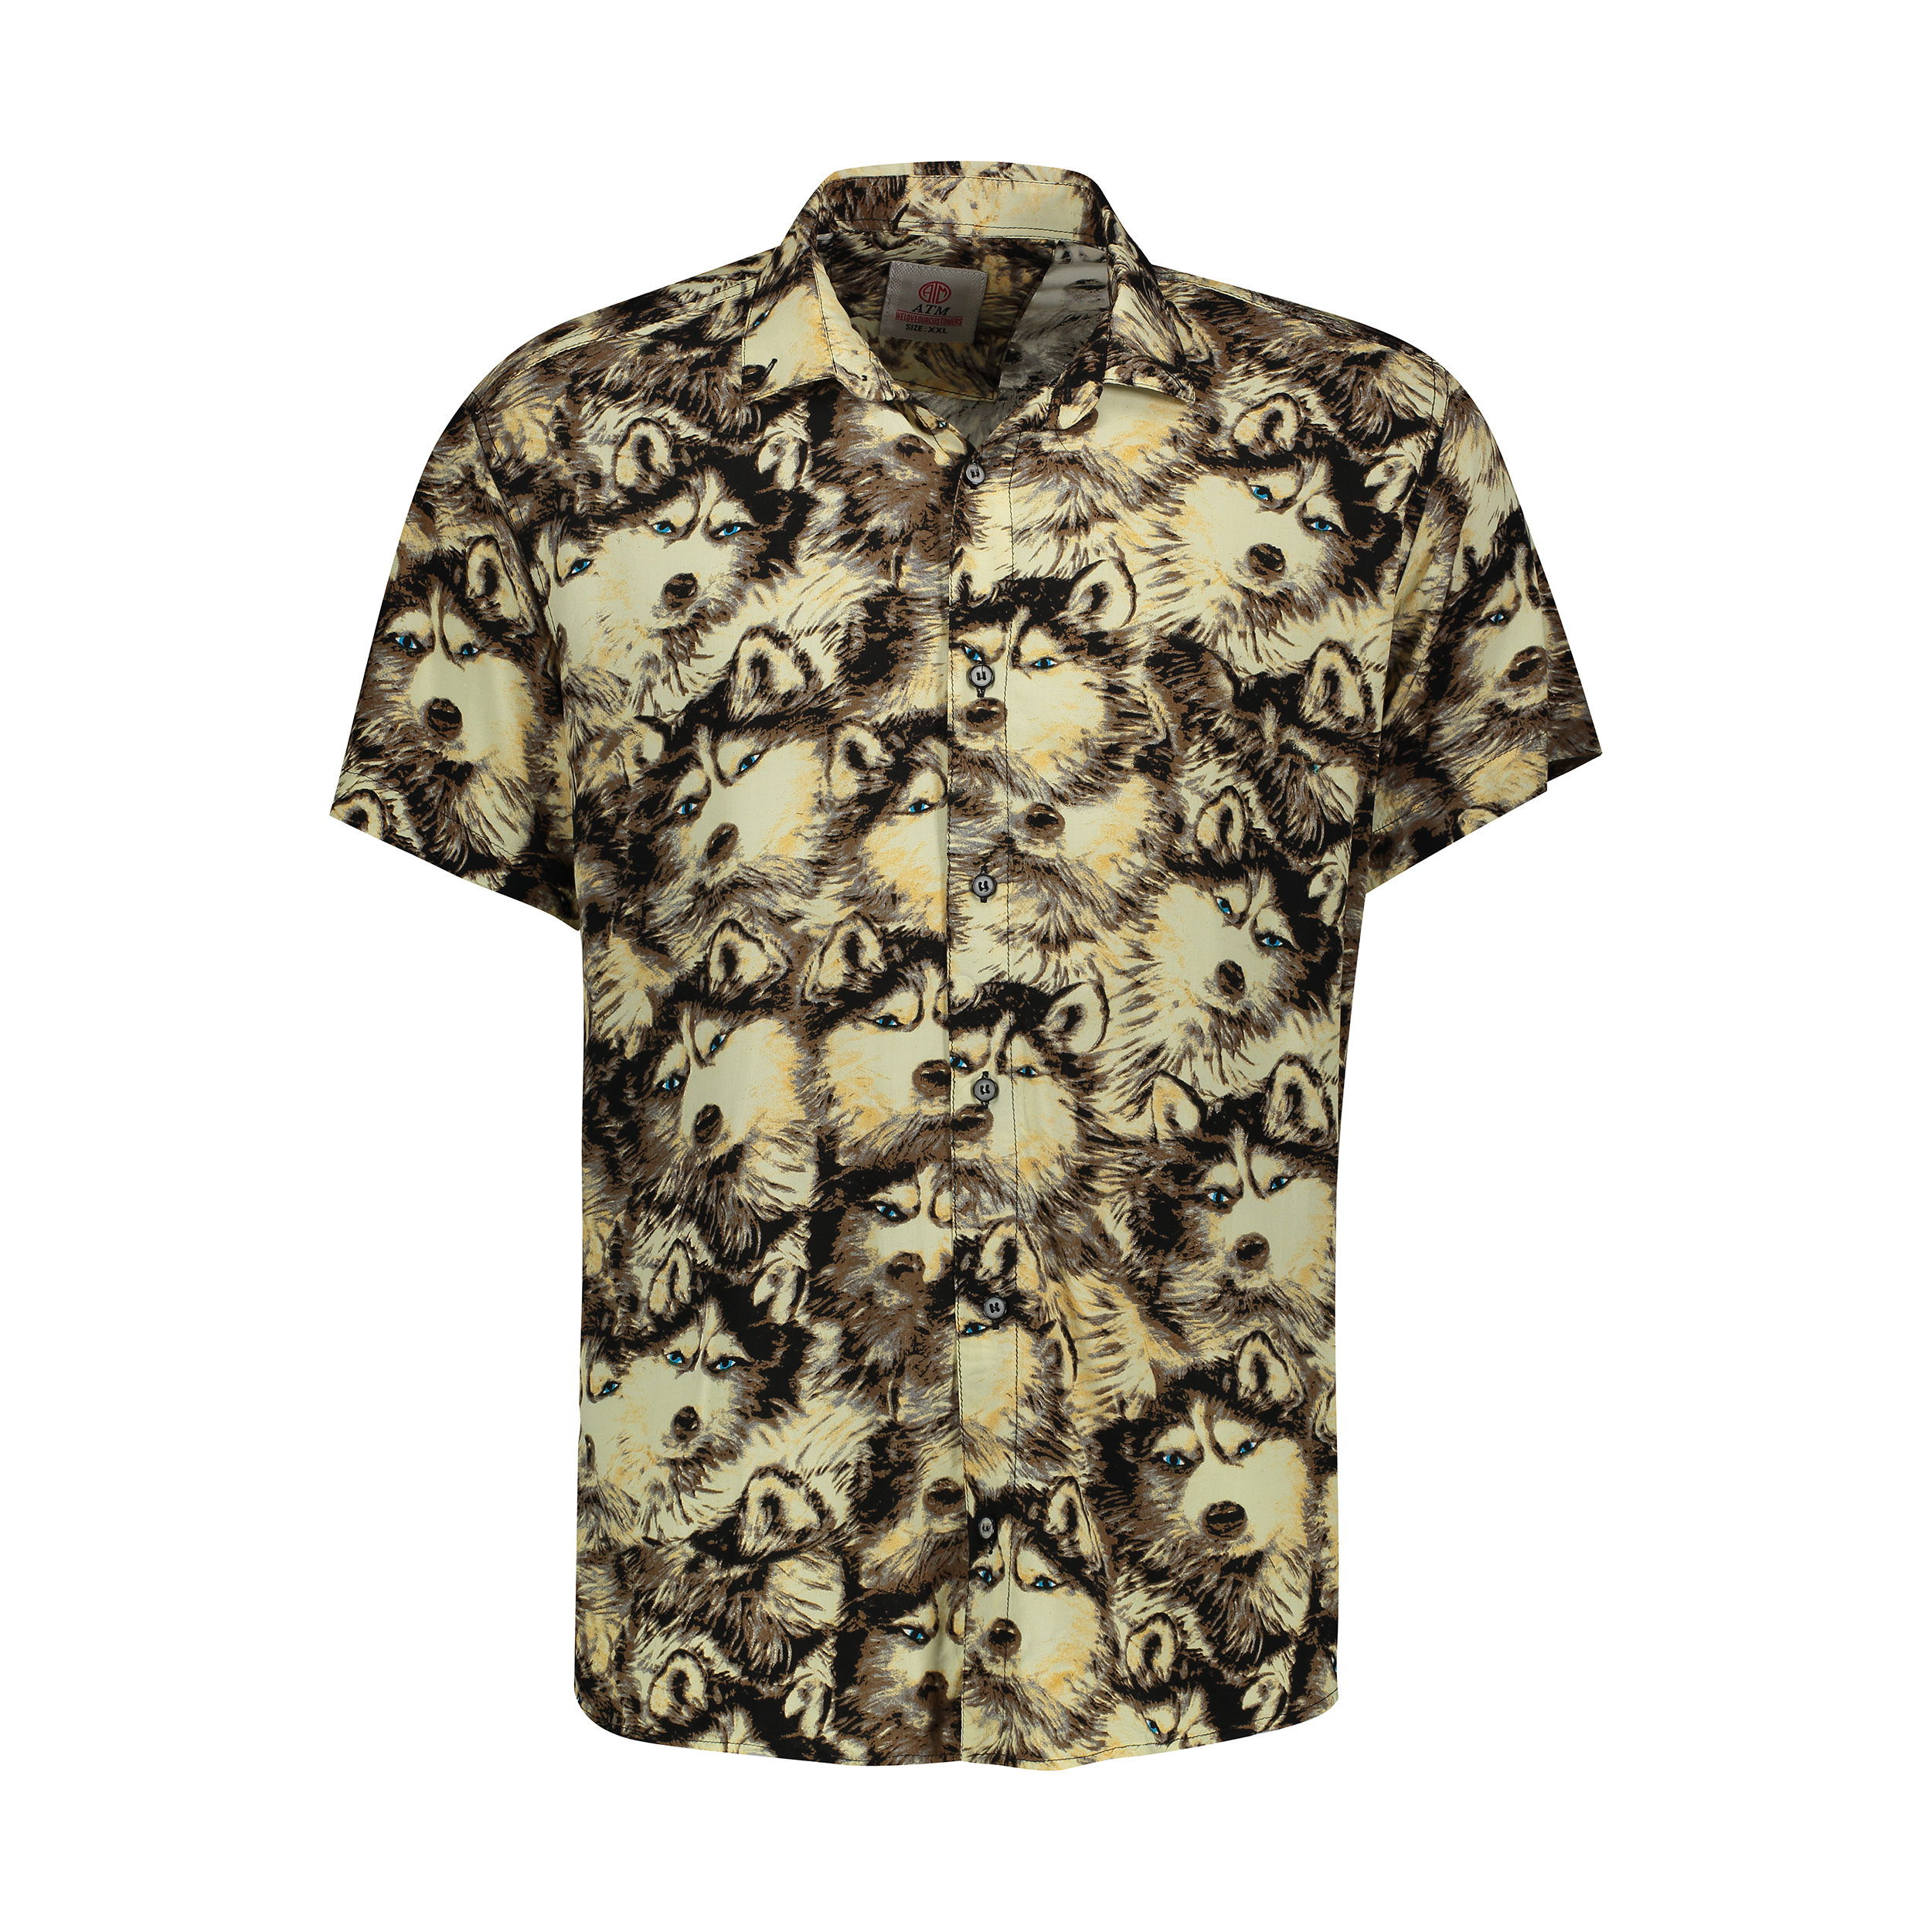 نکته خرید - قیمت روز پیراهن آستین کوتاه مردانه مدل هاوایی کد H-WOLF خرید